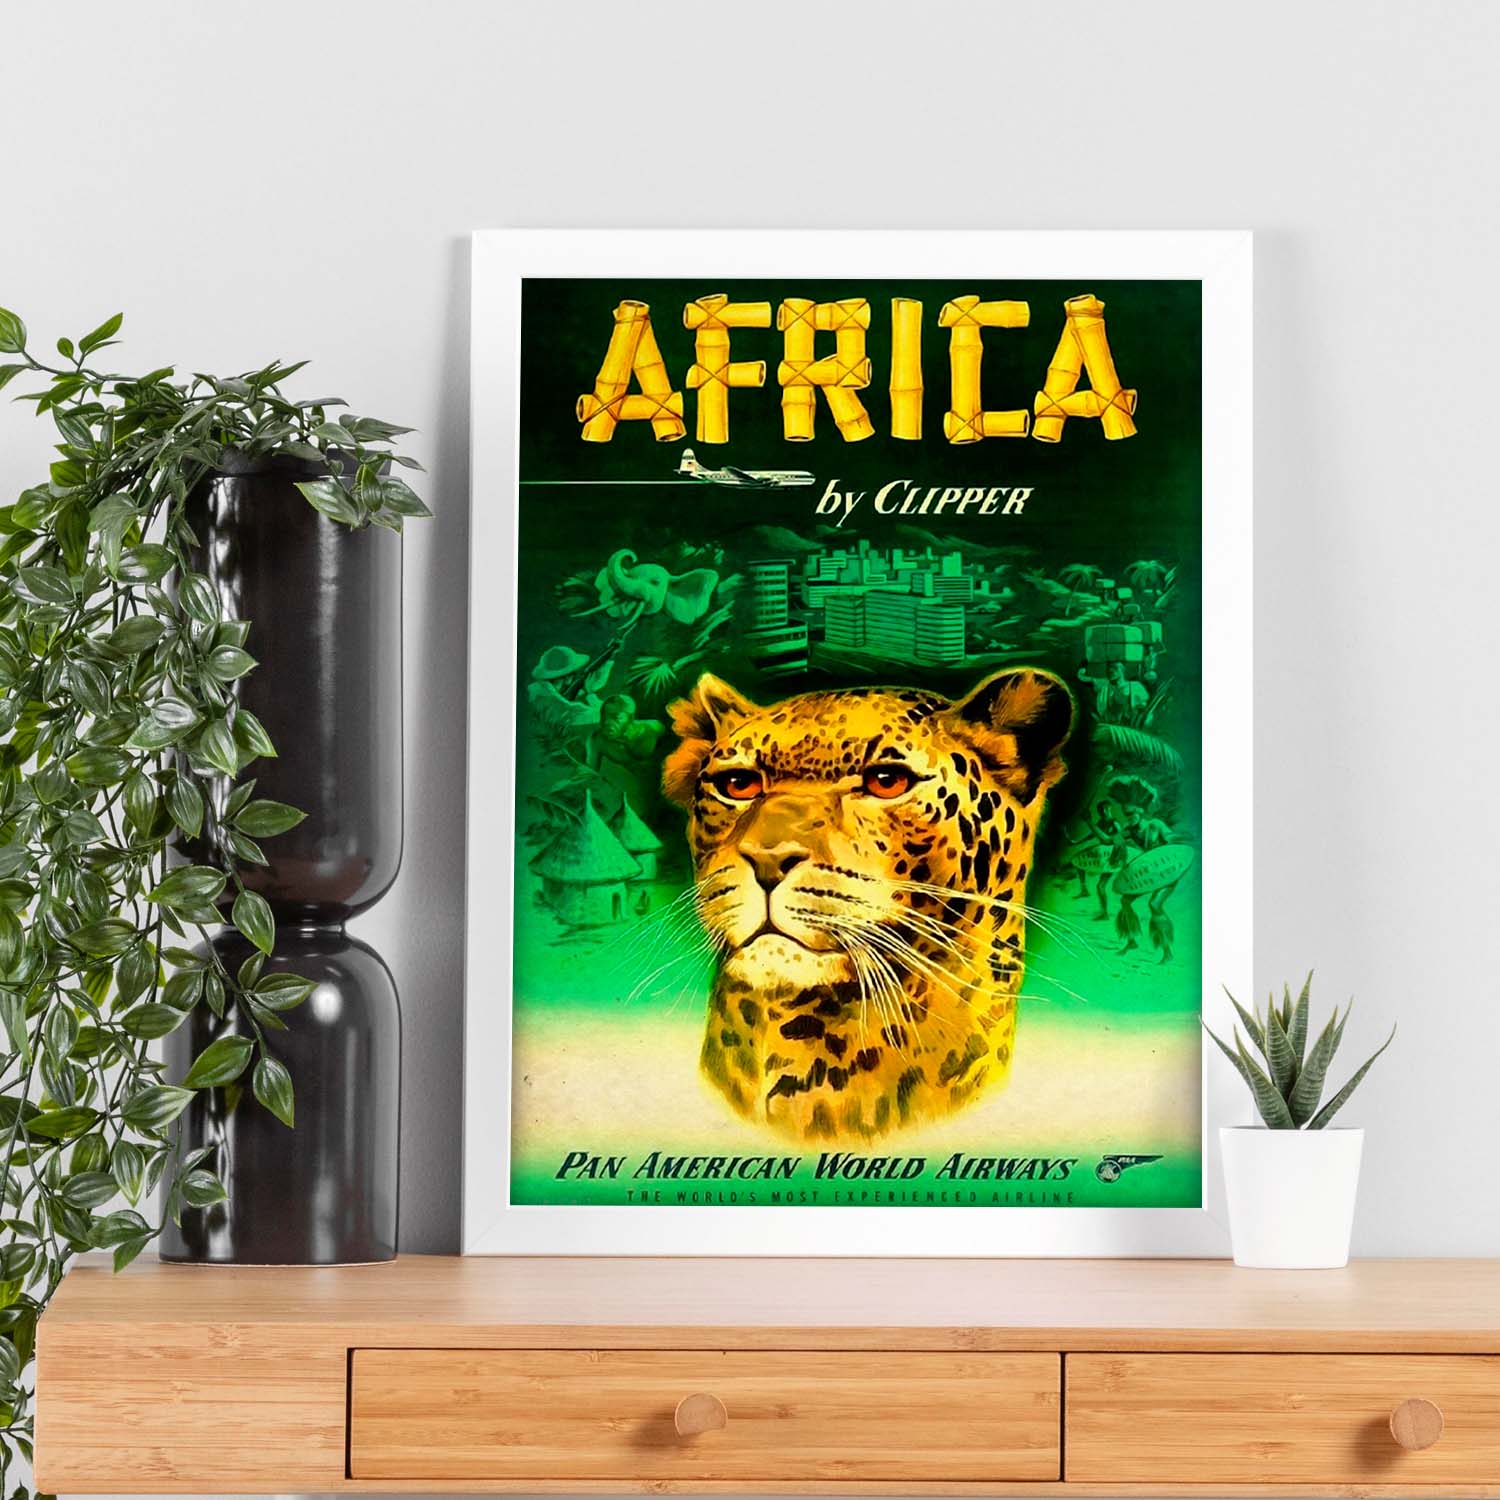 Poster vintage de Africa - Clipper. con imágenes vintage y de publicidad antigua.-Artwork-Nacnic-Nacnic Estudio SL